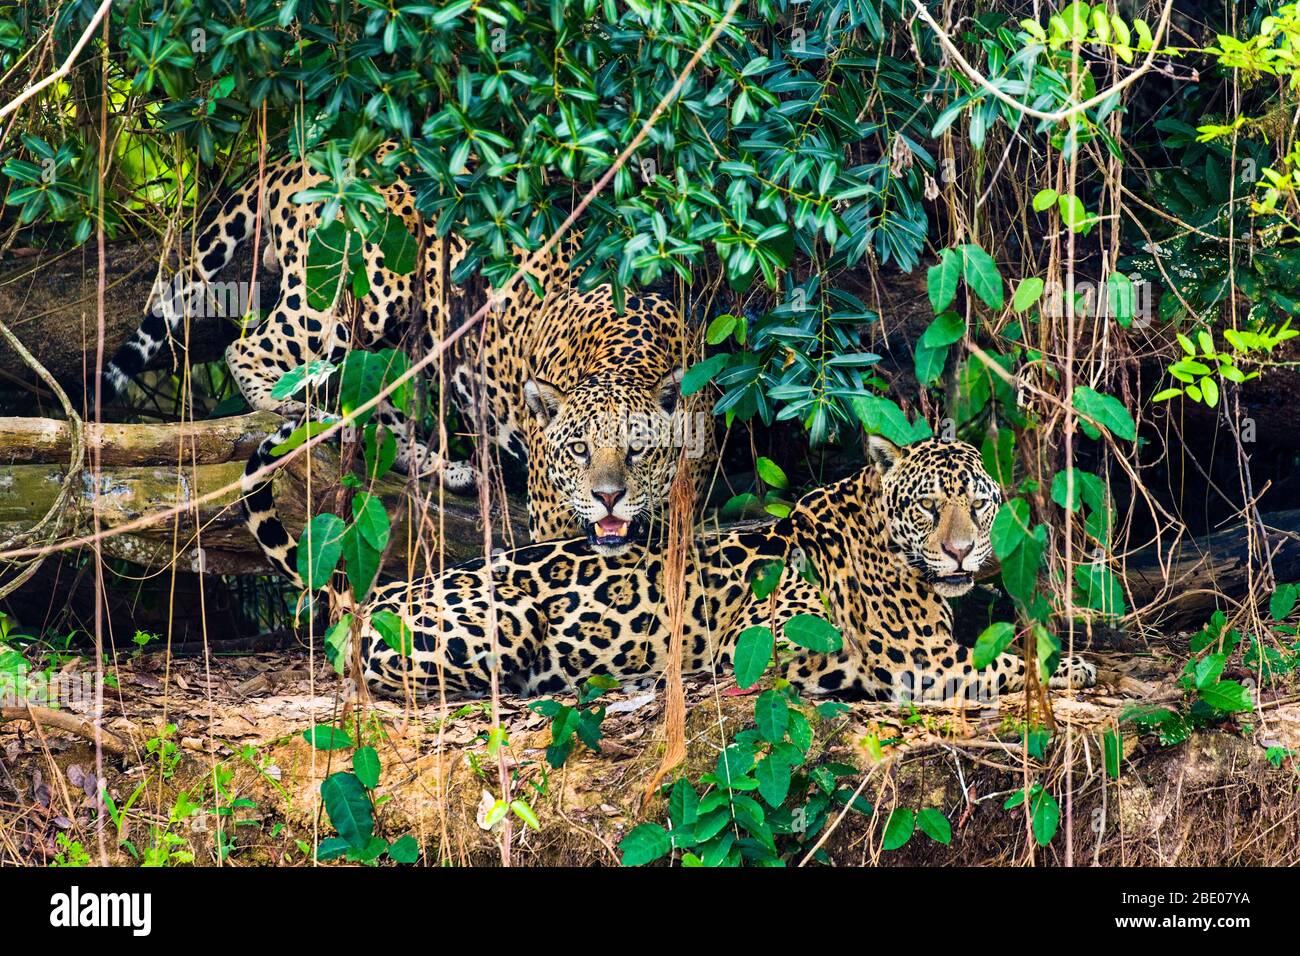 Deux jaguars (Pantana onca) reposant dans la forêt, Porto Jofre, Pantanal, Brésil Banque D'Images